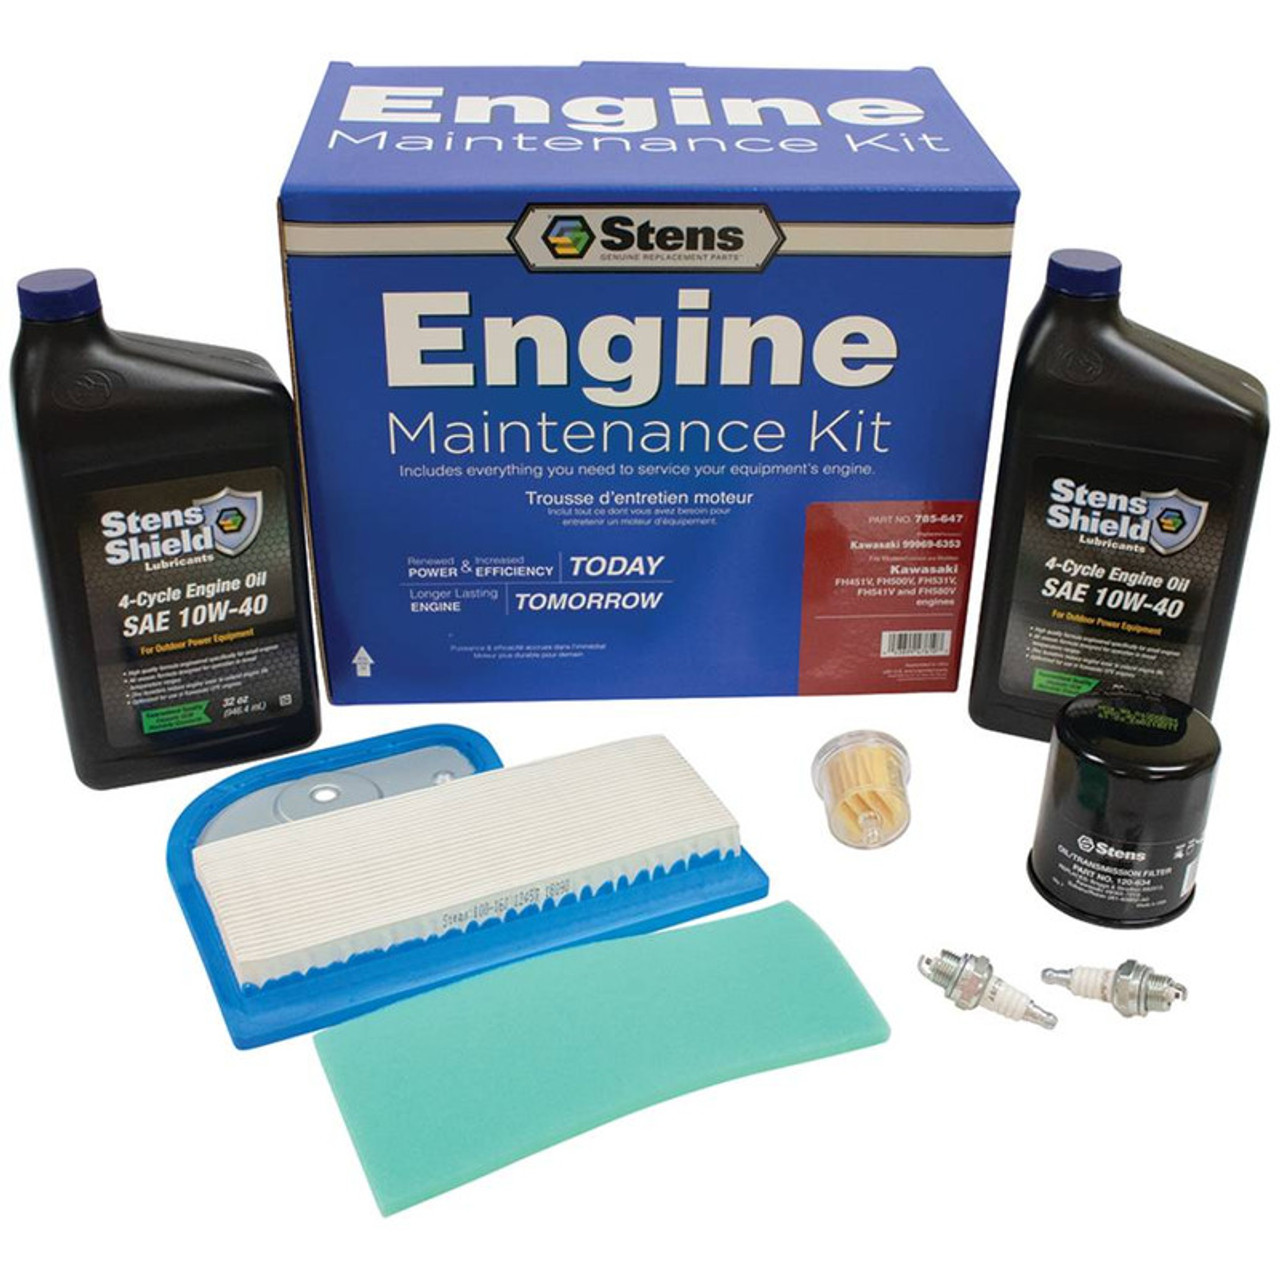 Engine Maintenance Kit 785-647